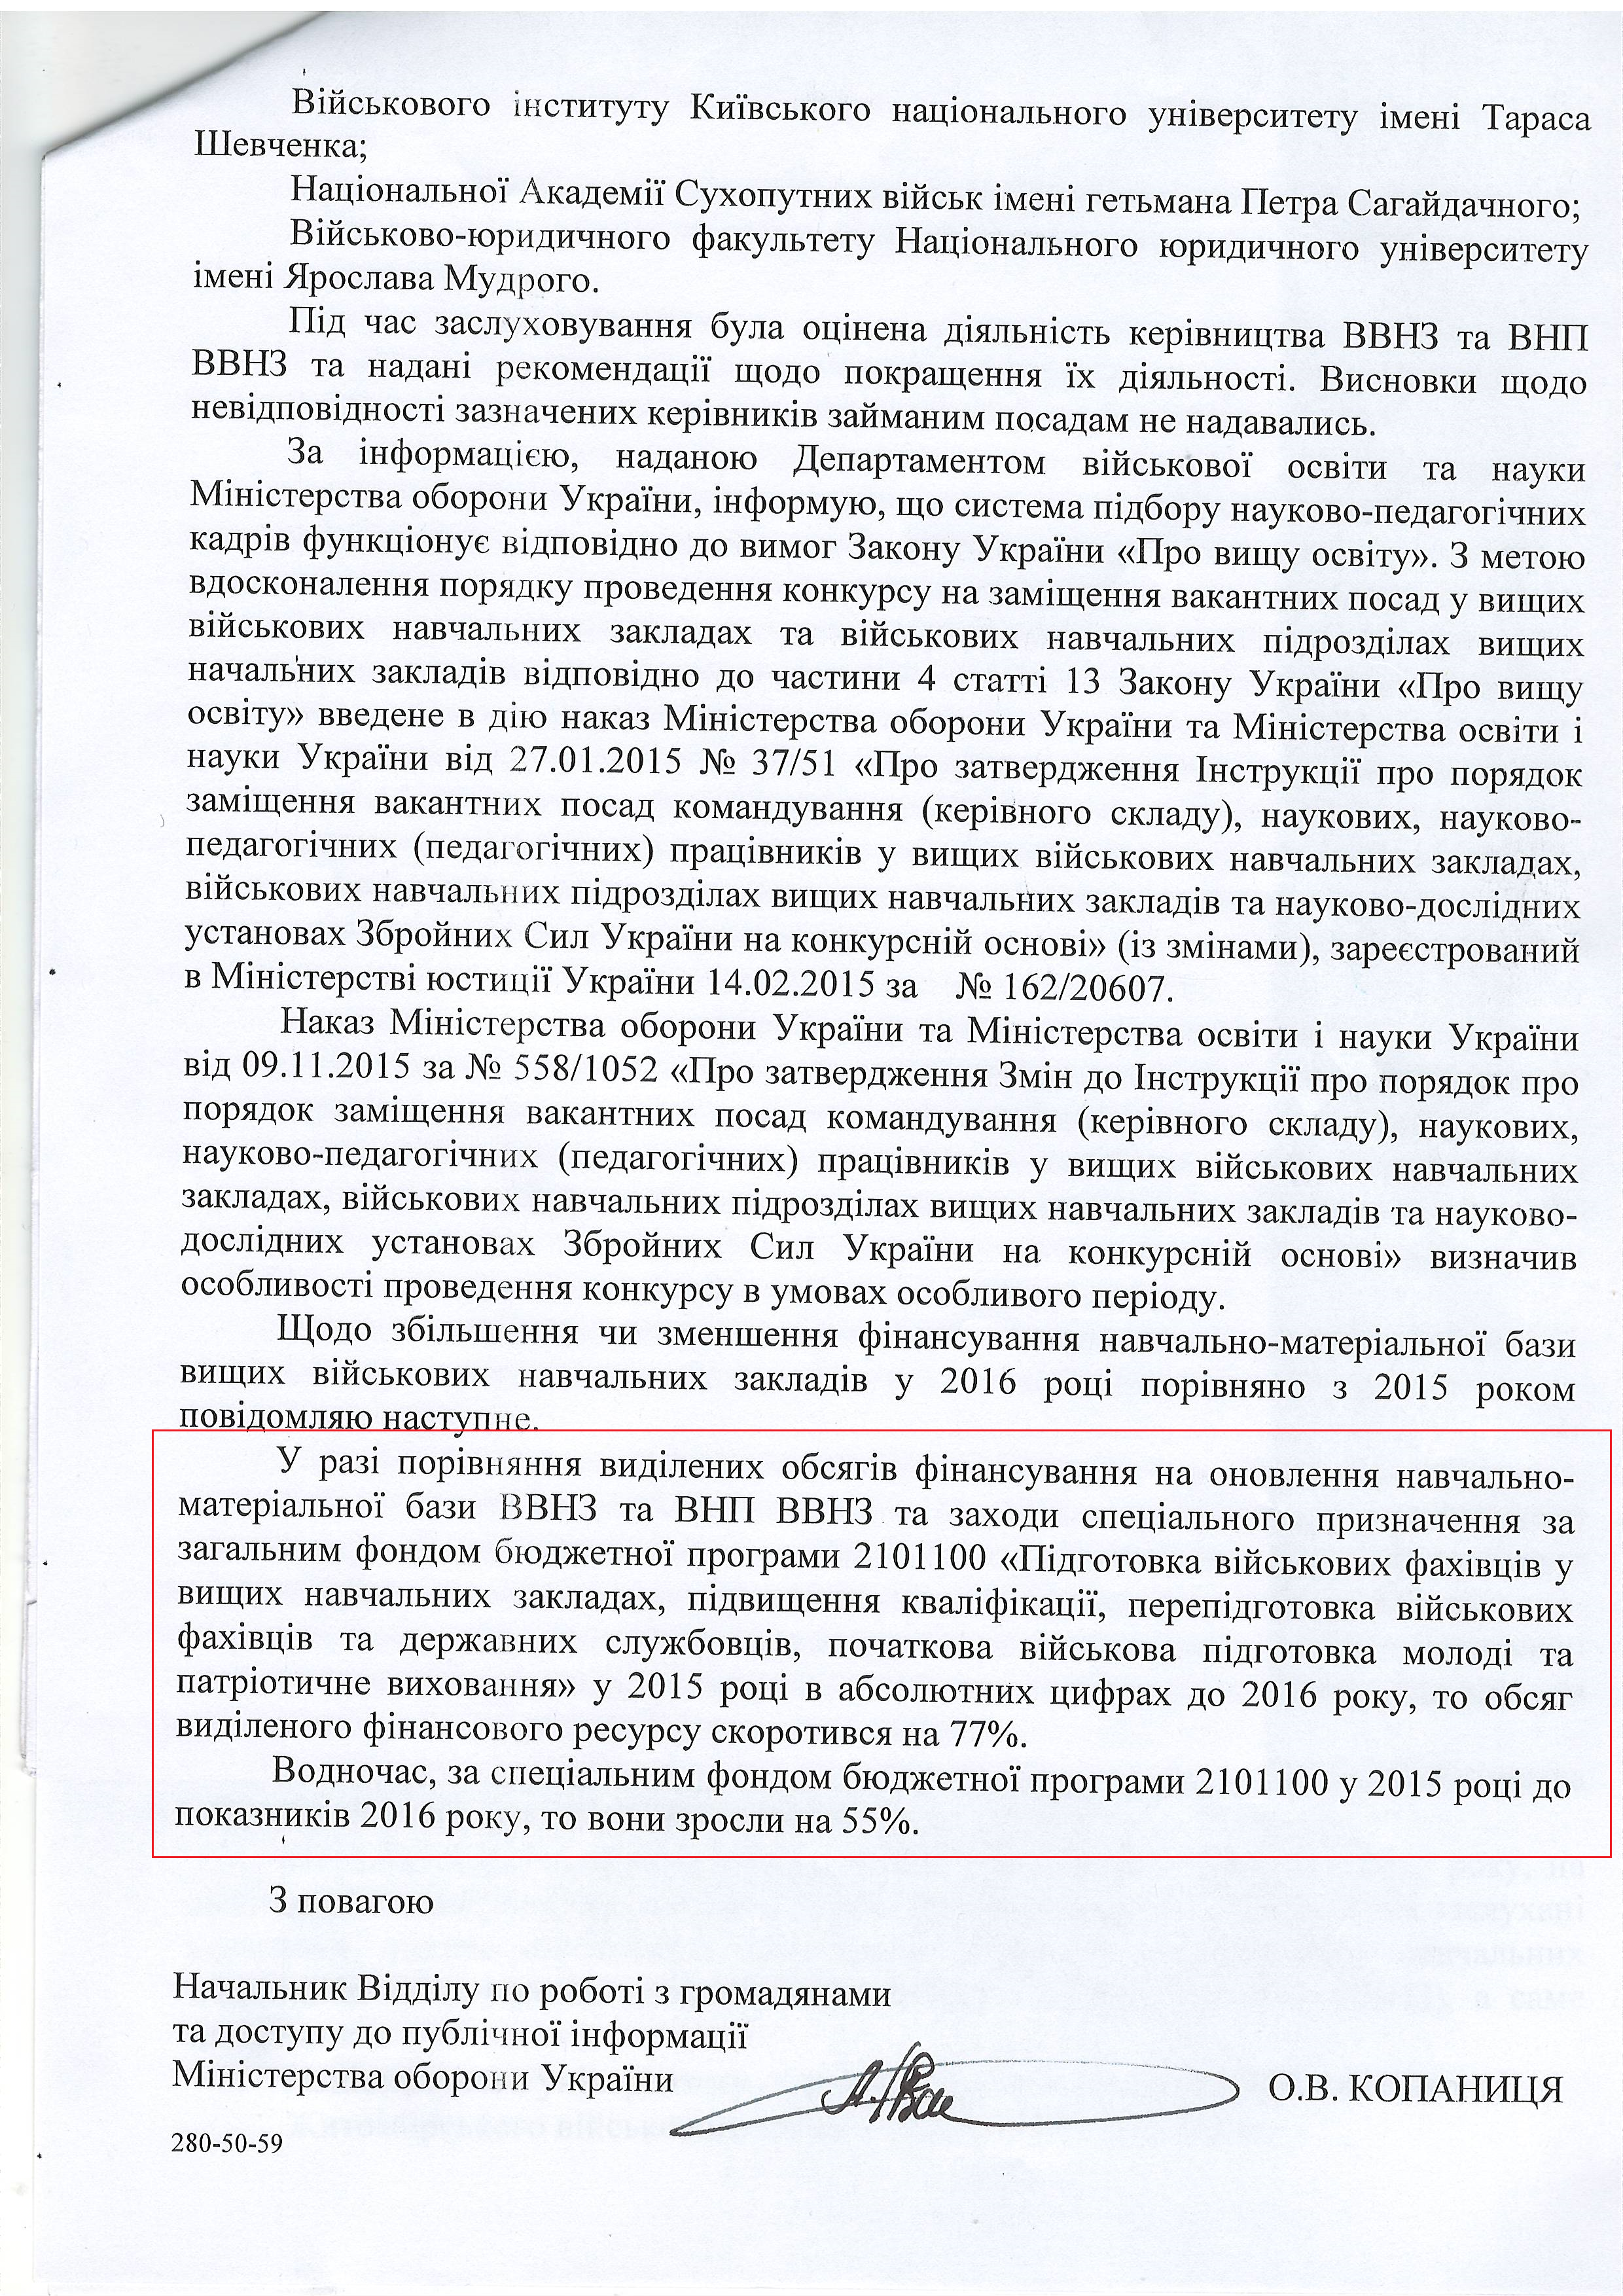 Лист міністерства оборони України від 9 березня 2016 року